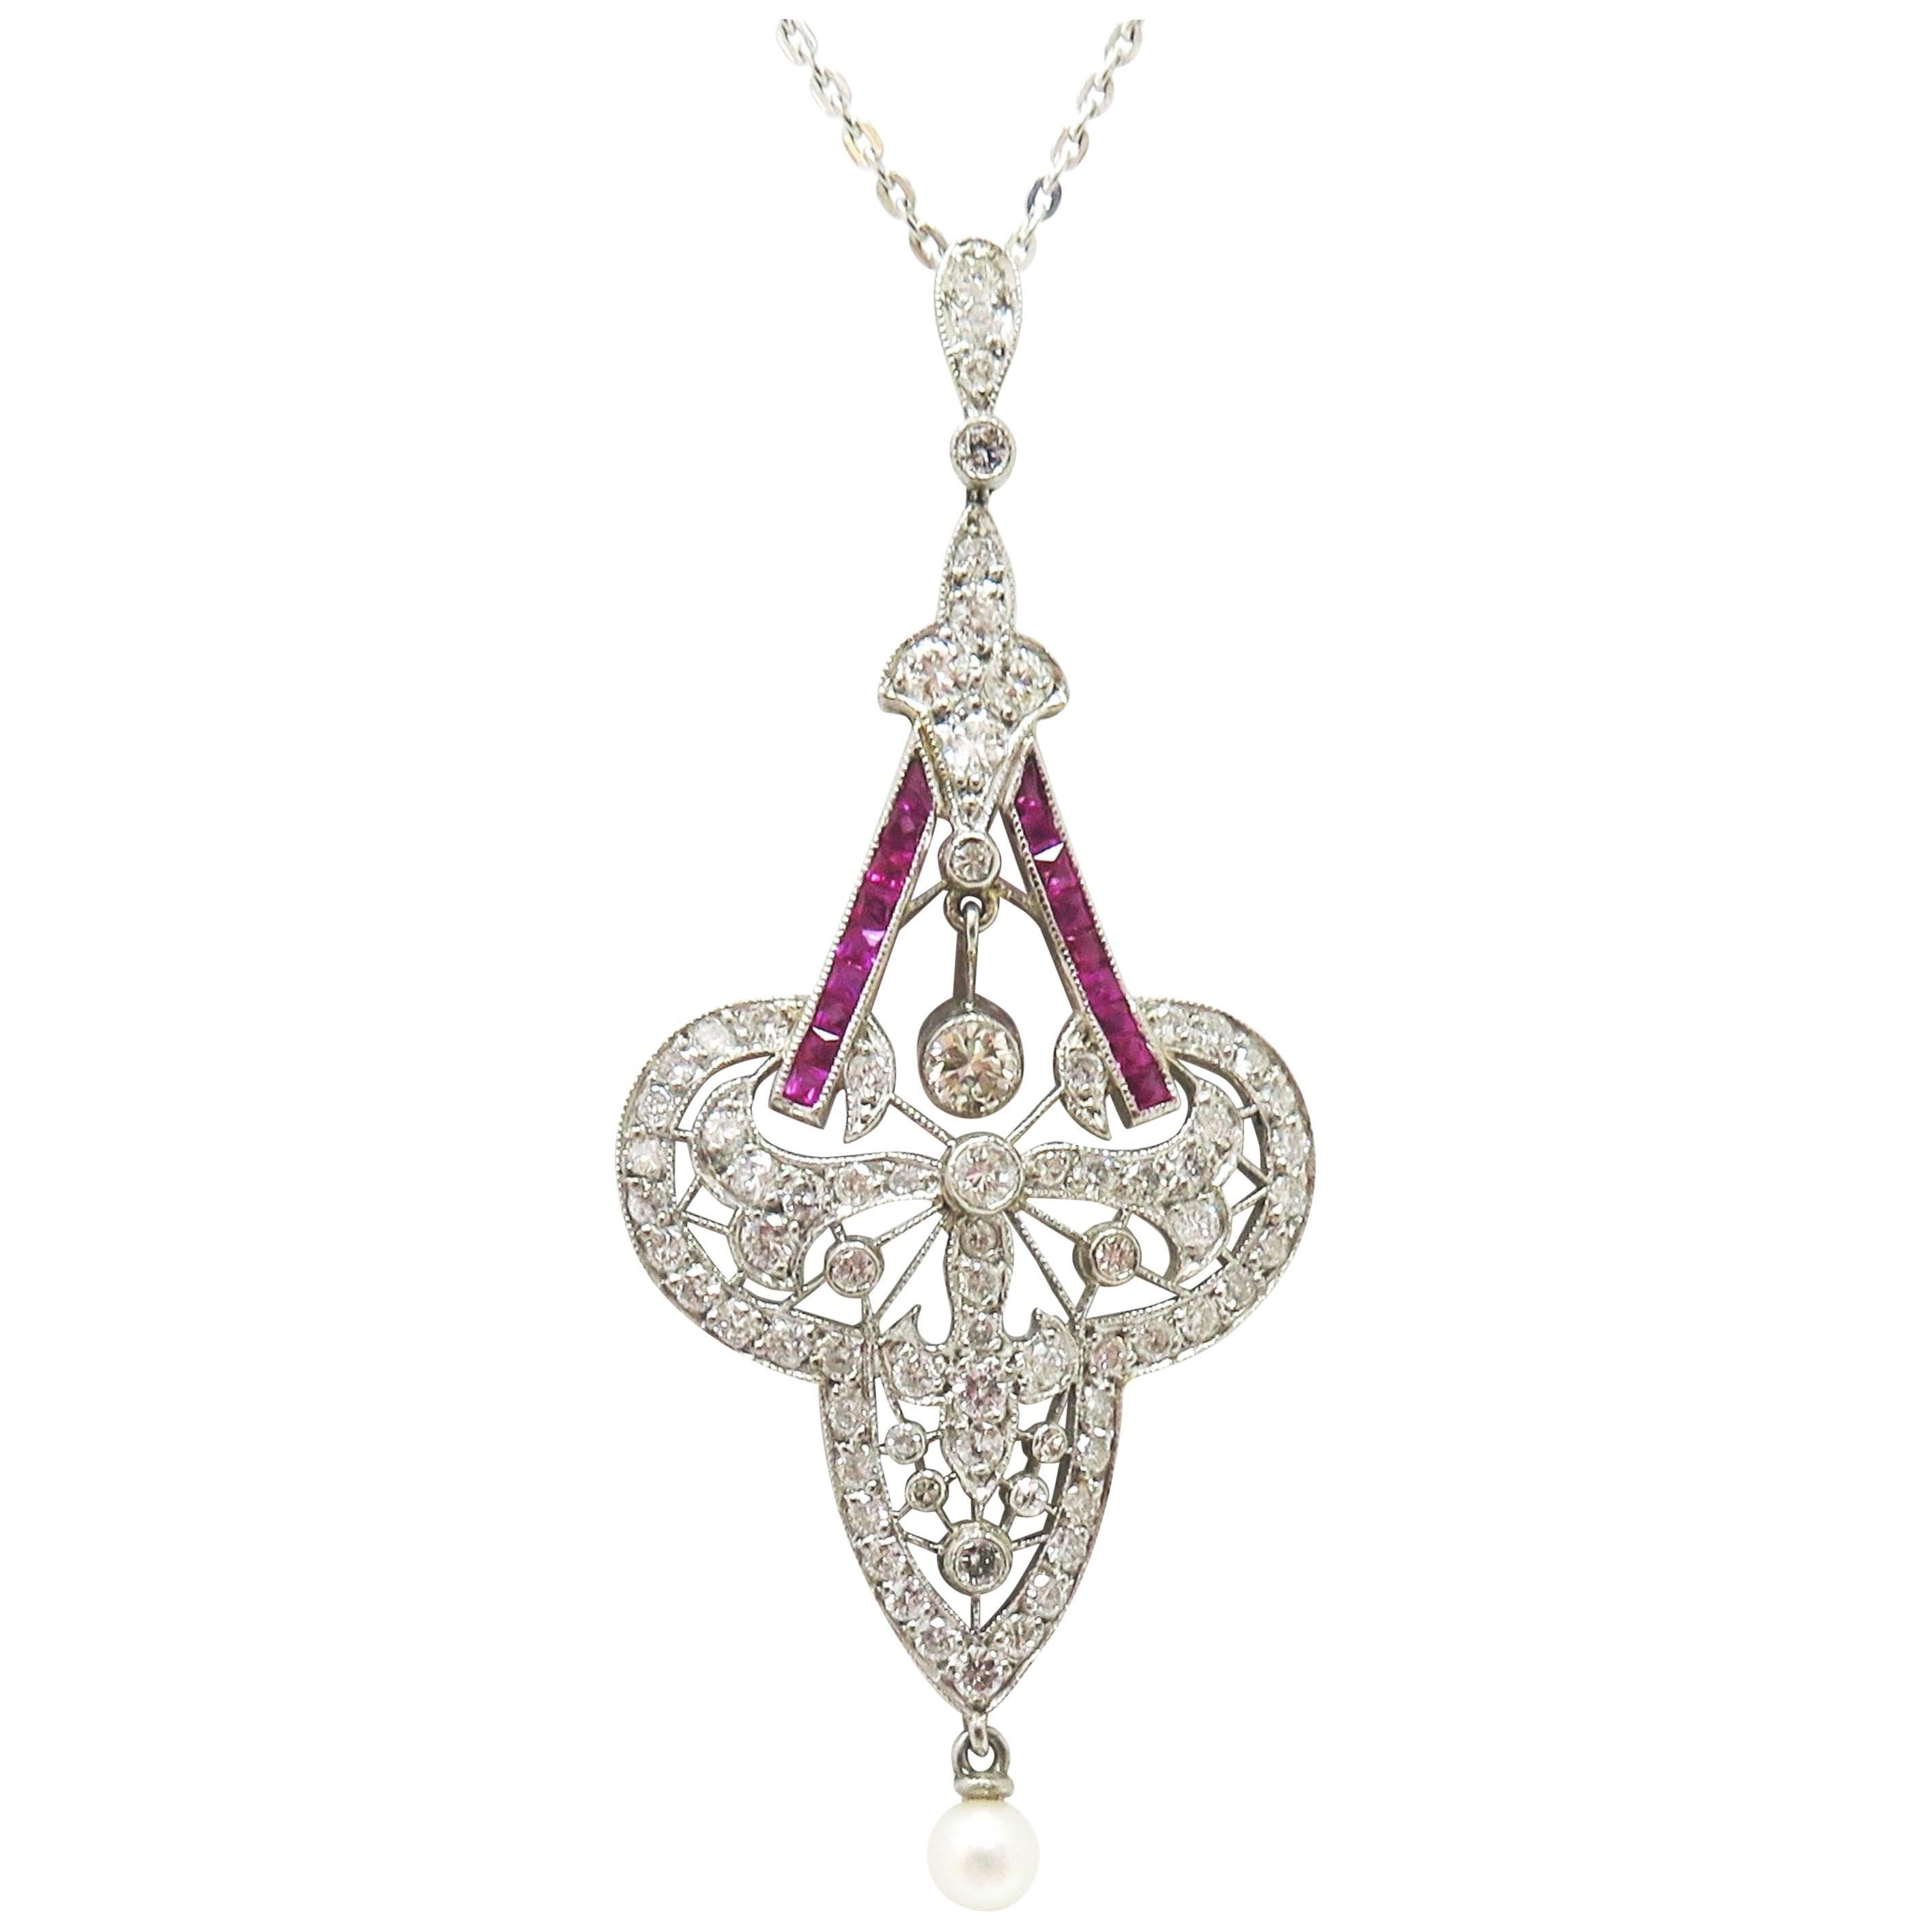 Antique 1920s Art Nouveau Pendant and Chain, Rubies, Diamonds and Platinum